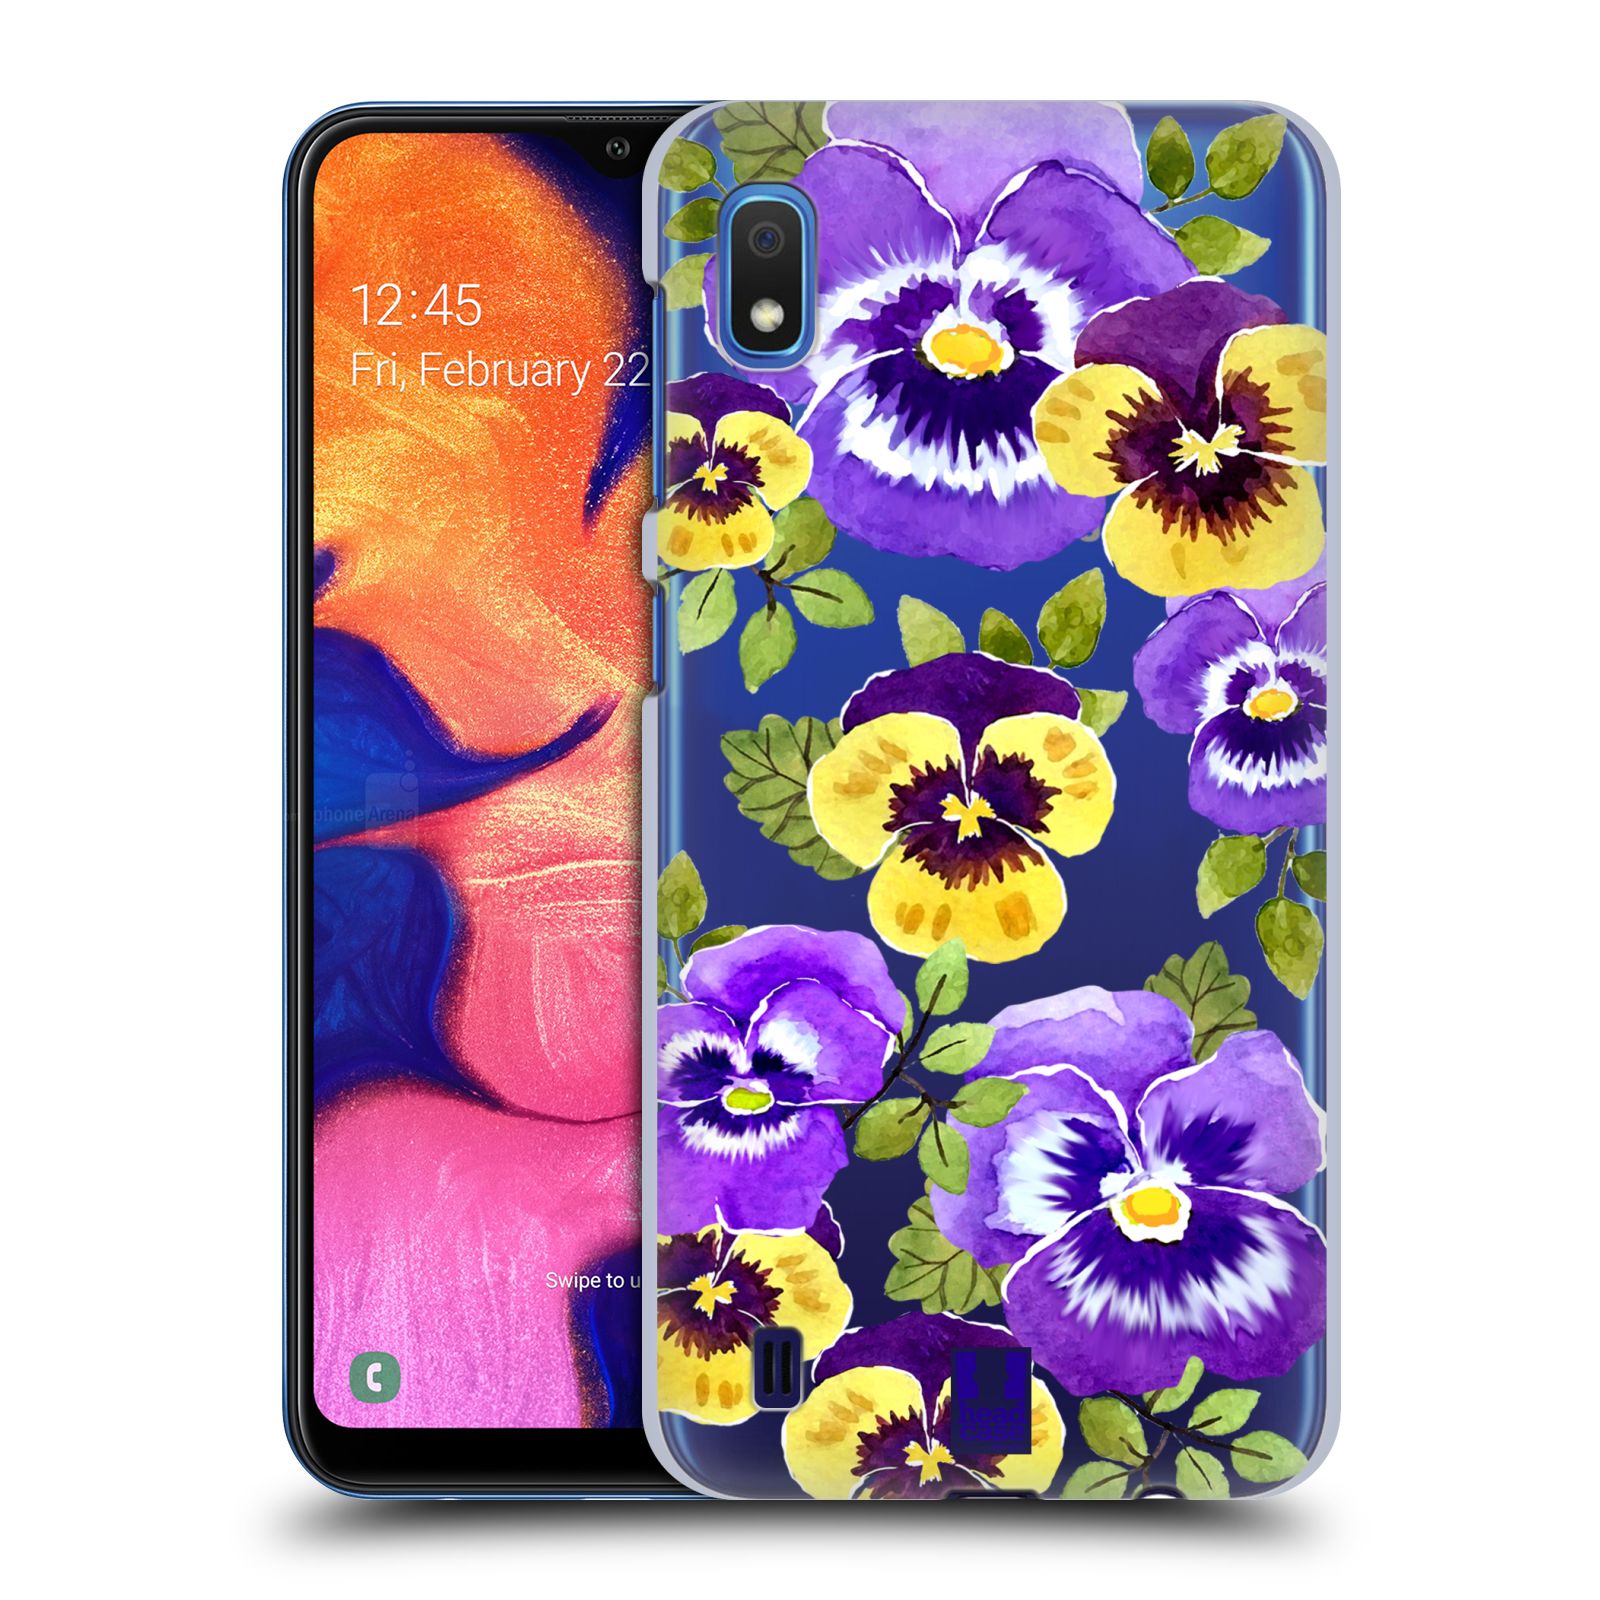 Pouzdro na mobil Samsung Galaxy A10 - HEAD CASE - Maceška fialová barva